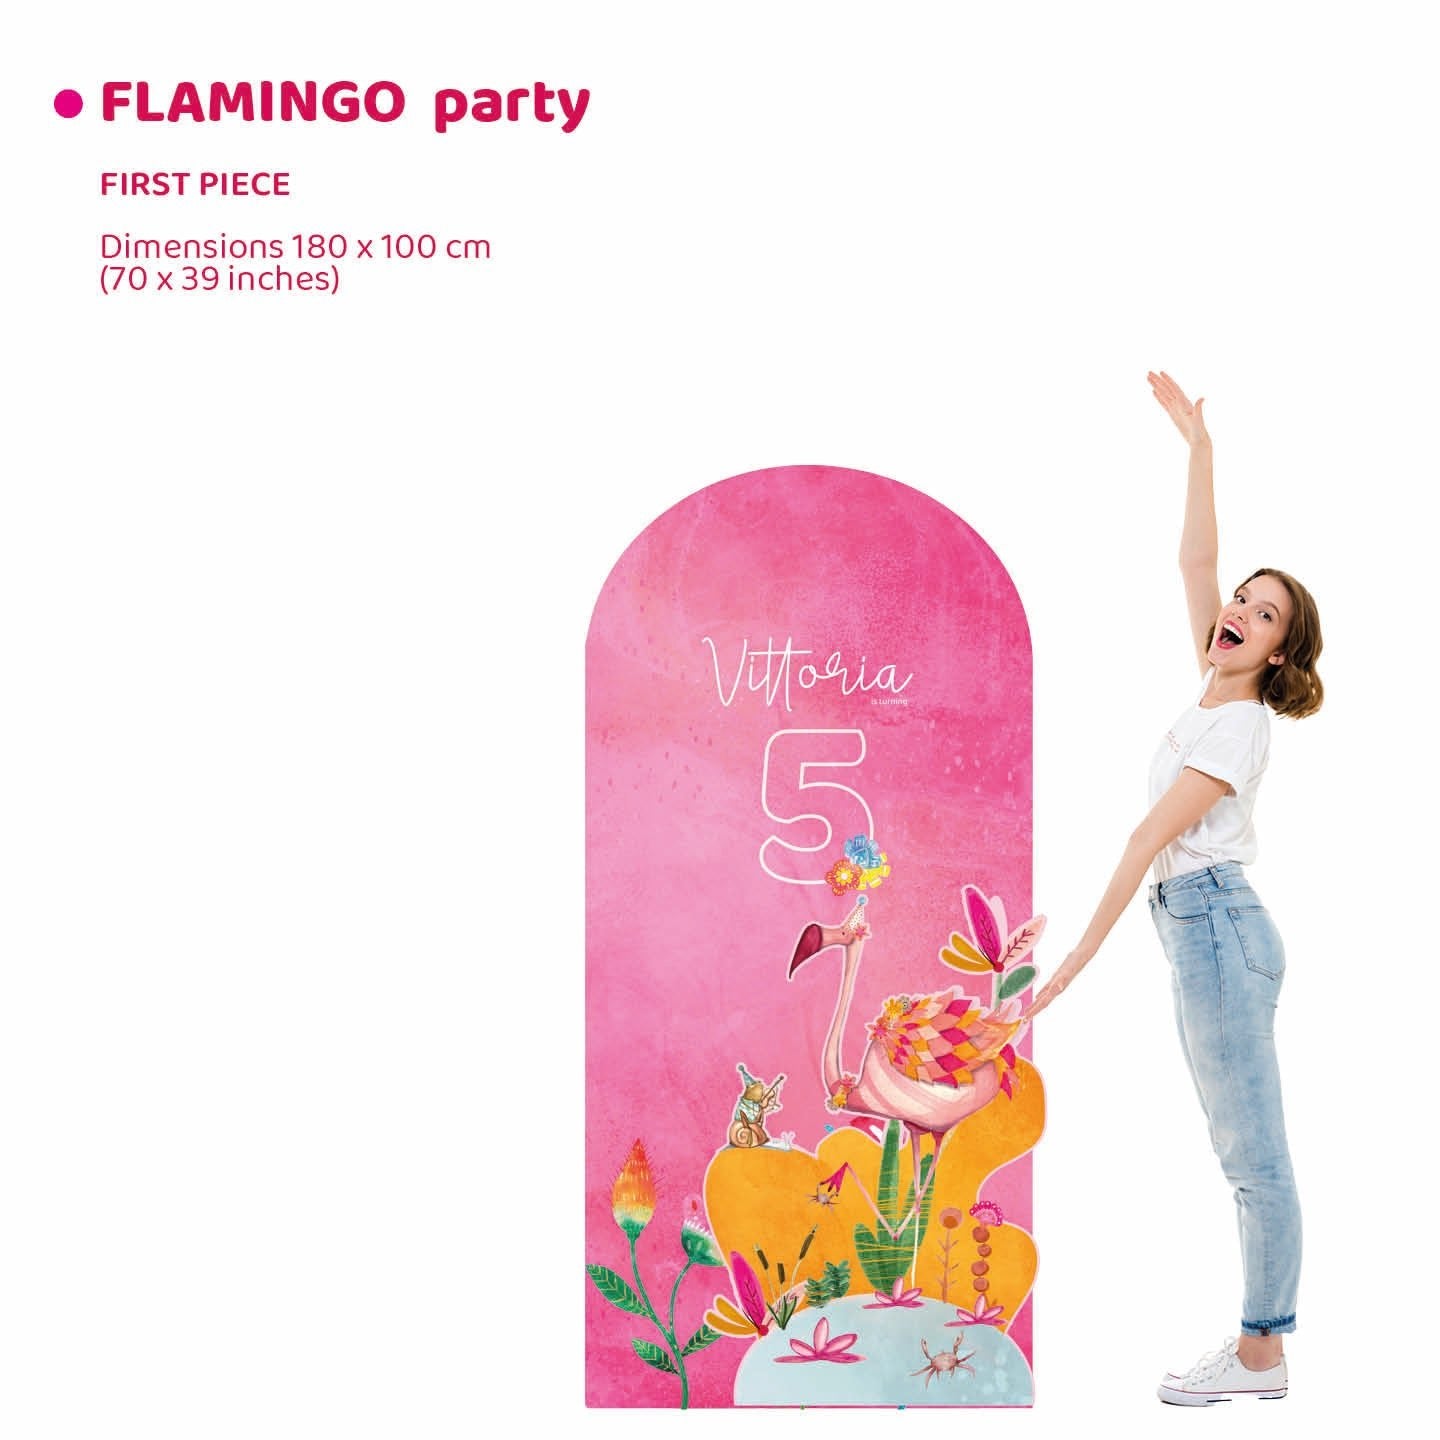 FLAMINGO PARTY da terra | Decorazione festa di compleanno | Party planner - Peekaboo